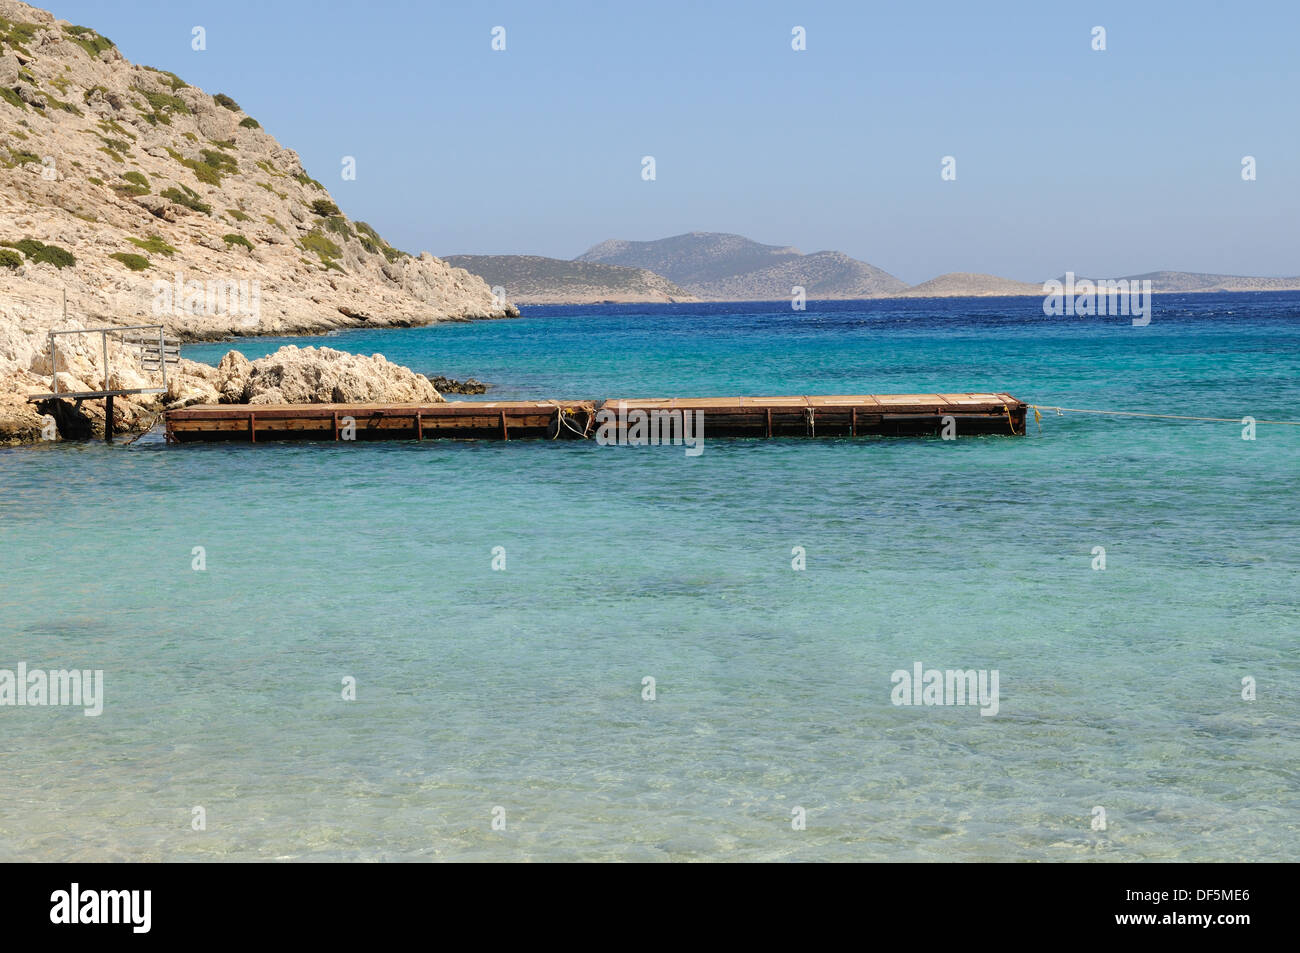 Jetée en bois dans une mer bleu clair Kania Halki Chalki Plage île grecque du Dodécanèse Mer Égée Grèce Europe Banque D'Images